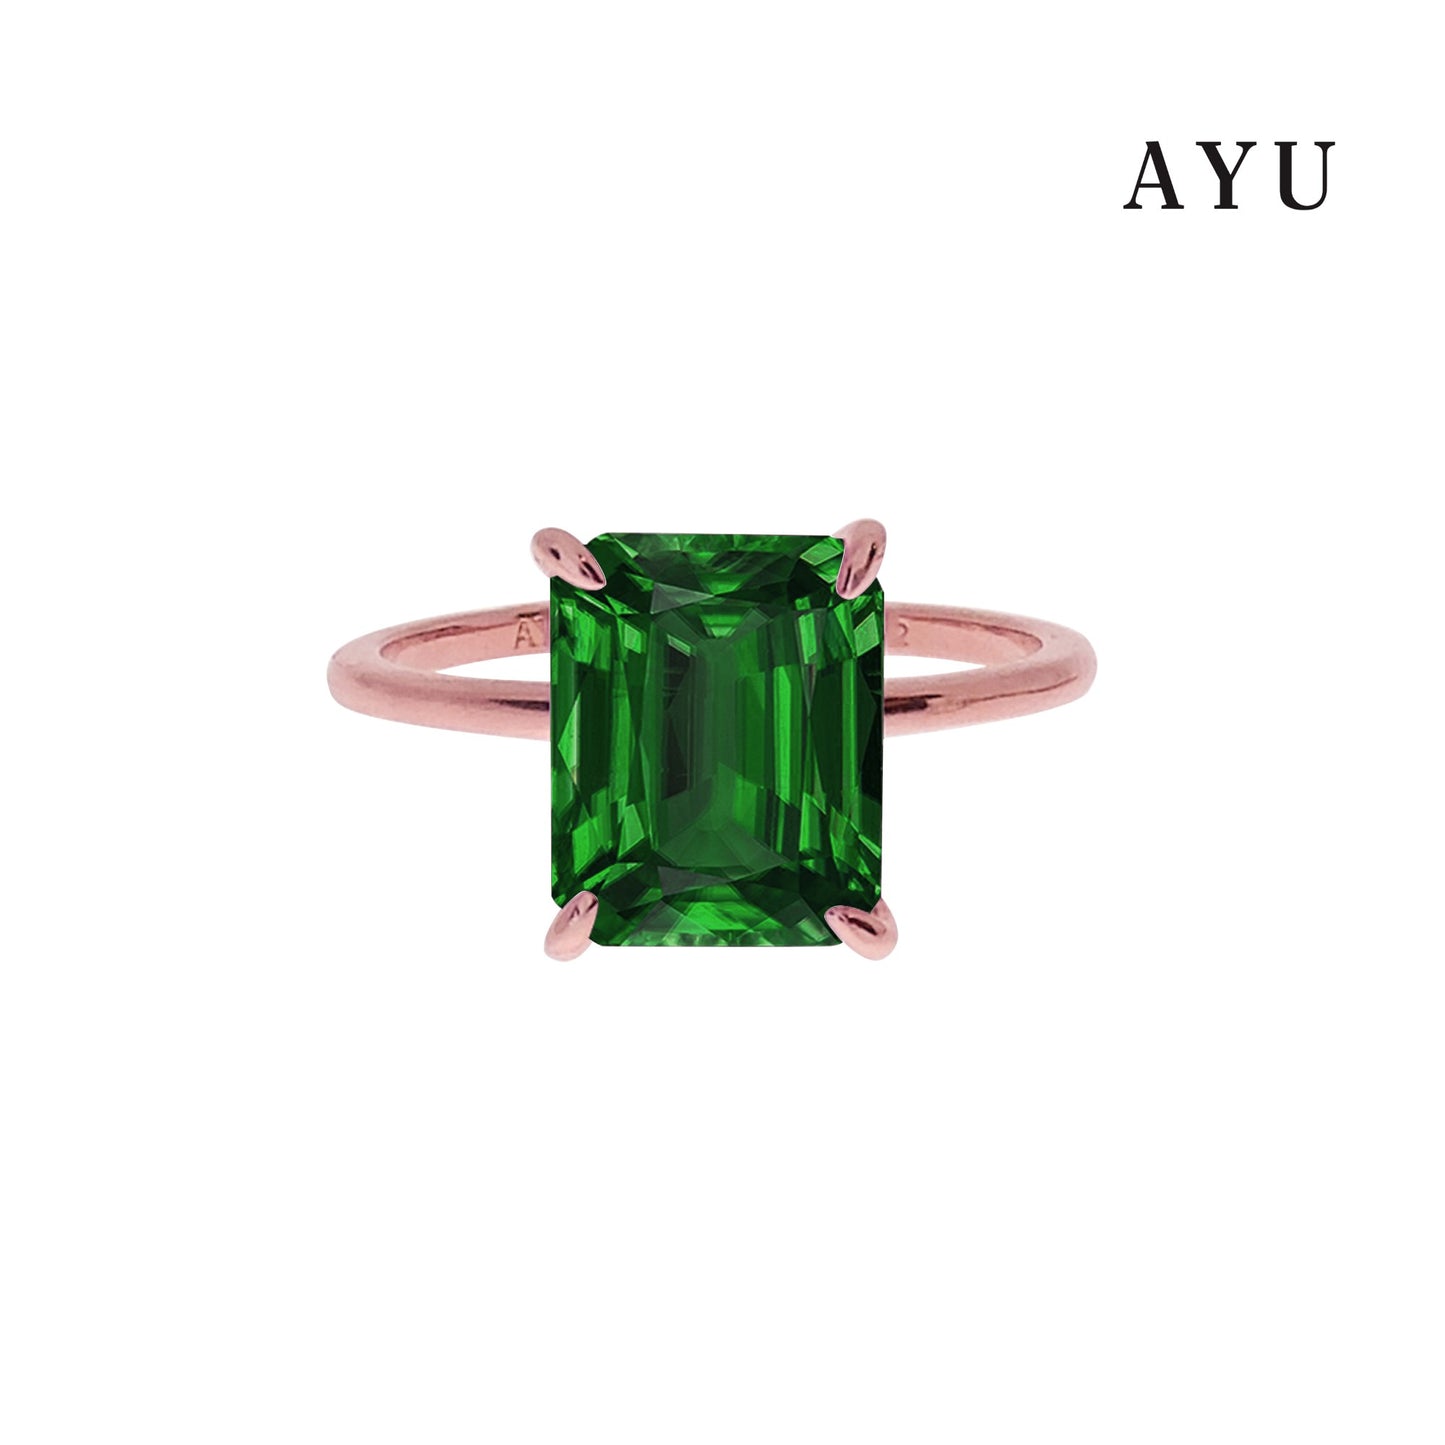 The AYU Setting In Glam Emerald Cut 17k Rose Gold